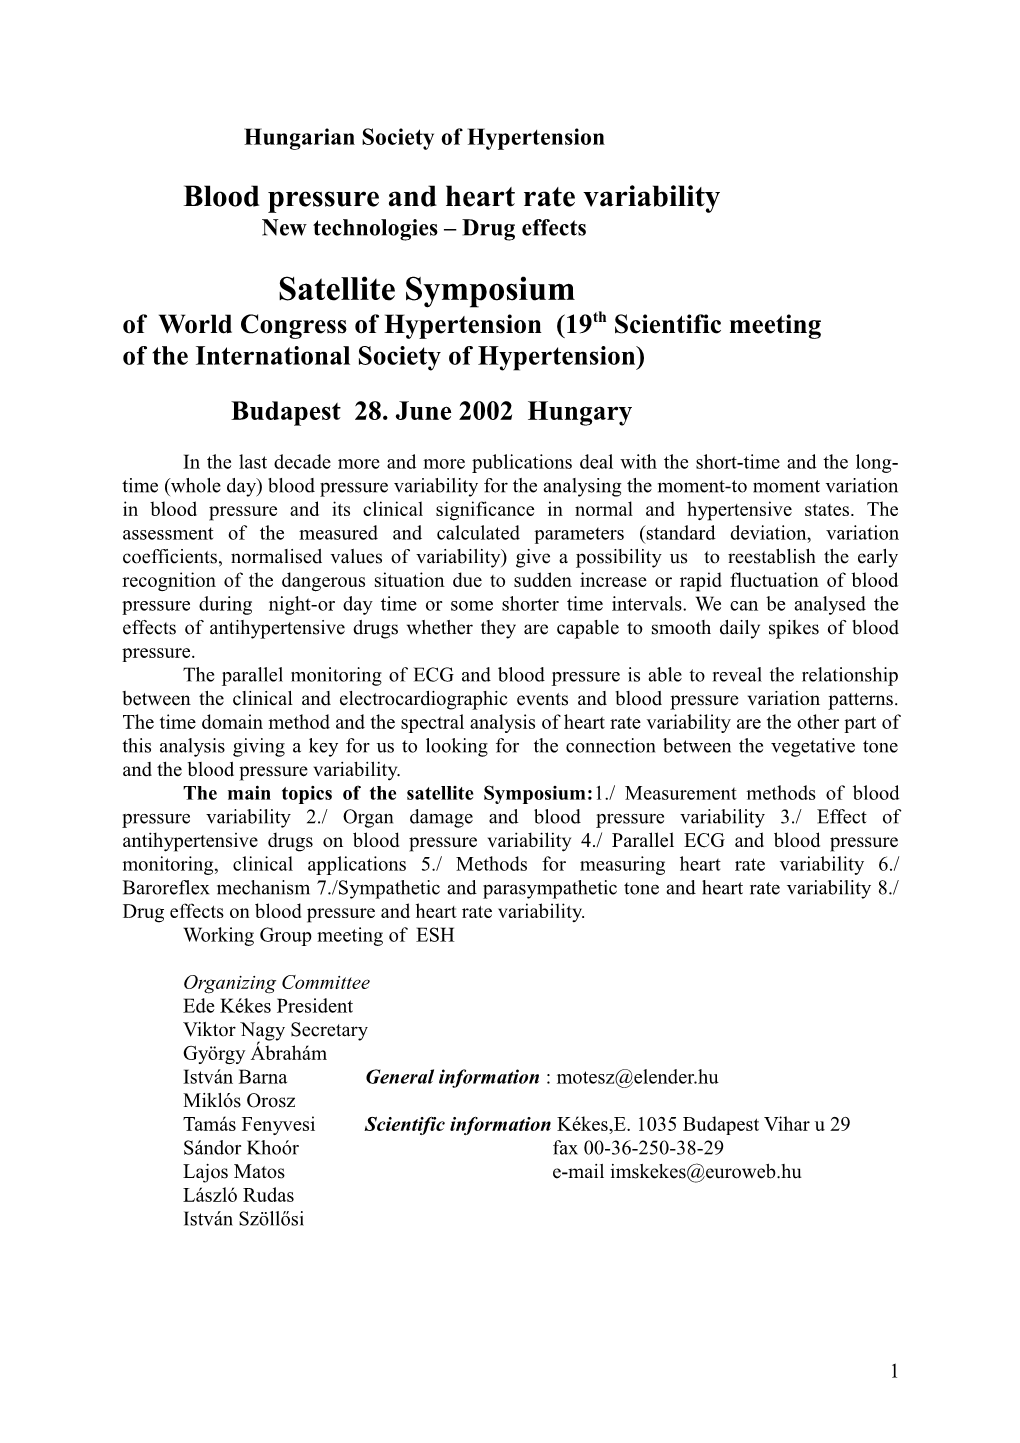 Satellite Symposium Of